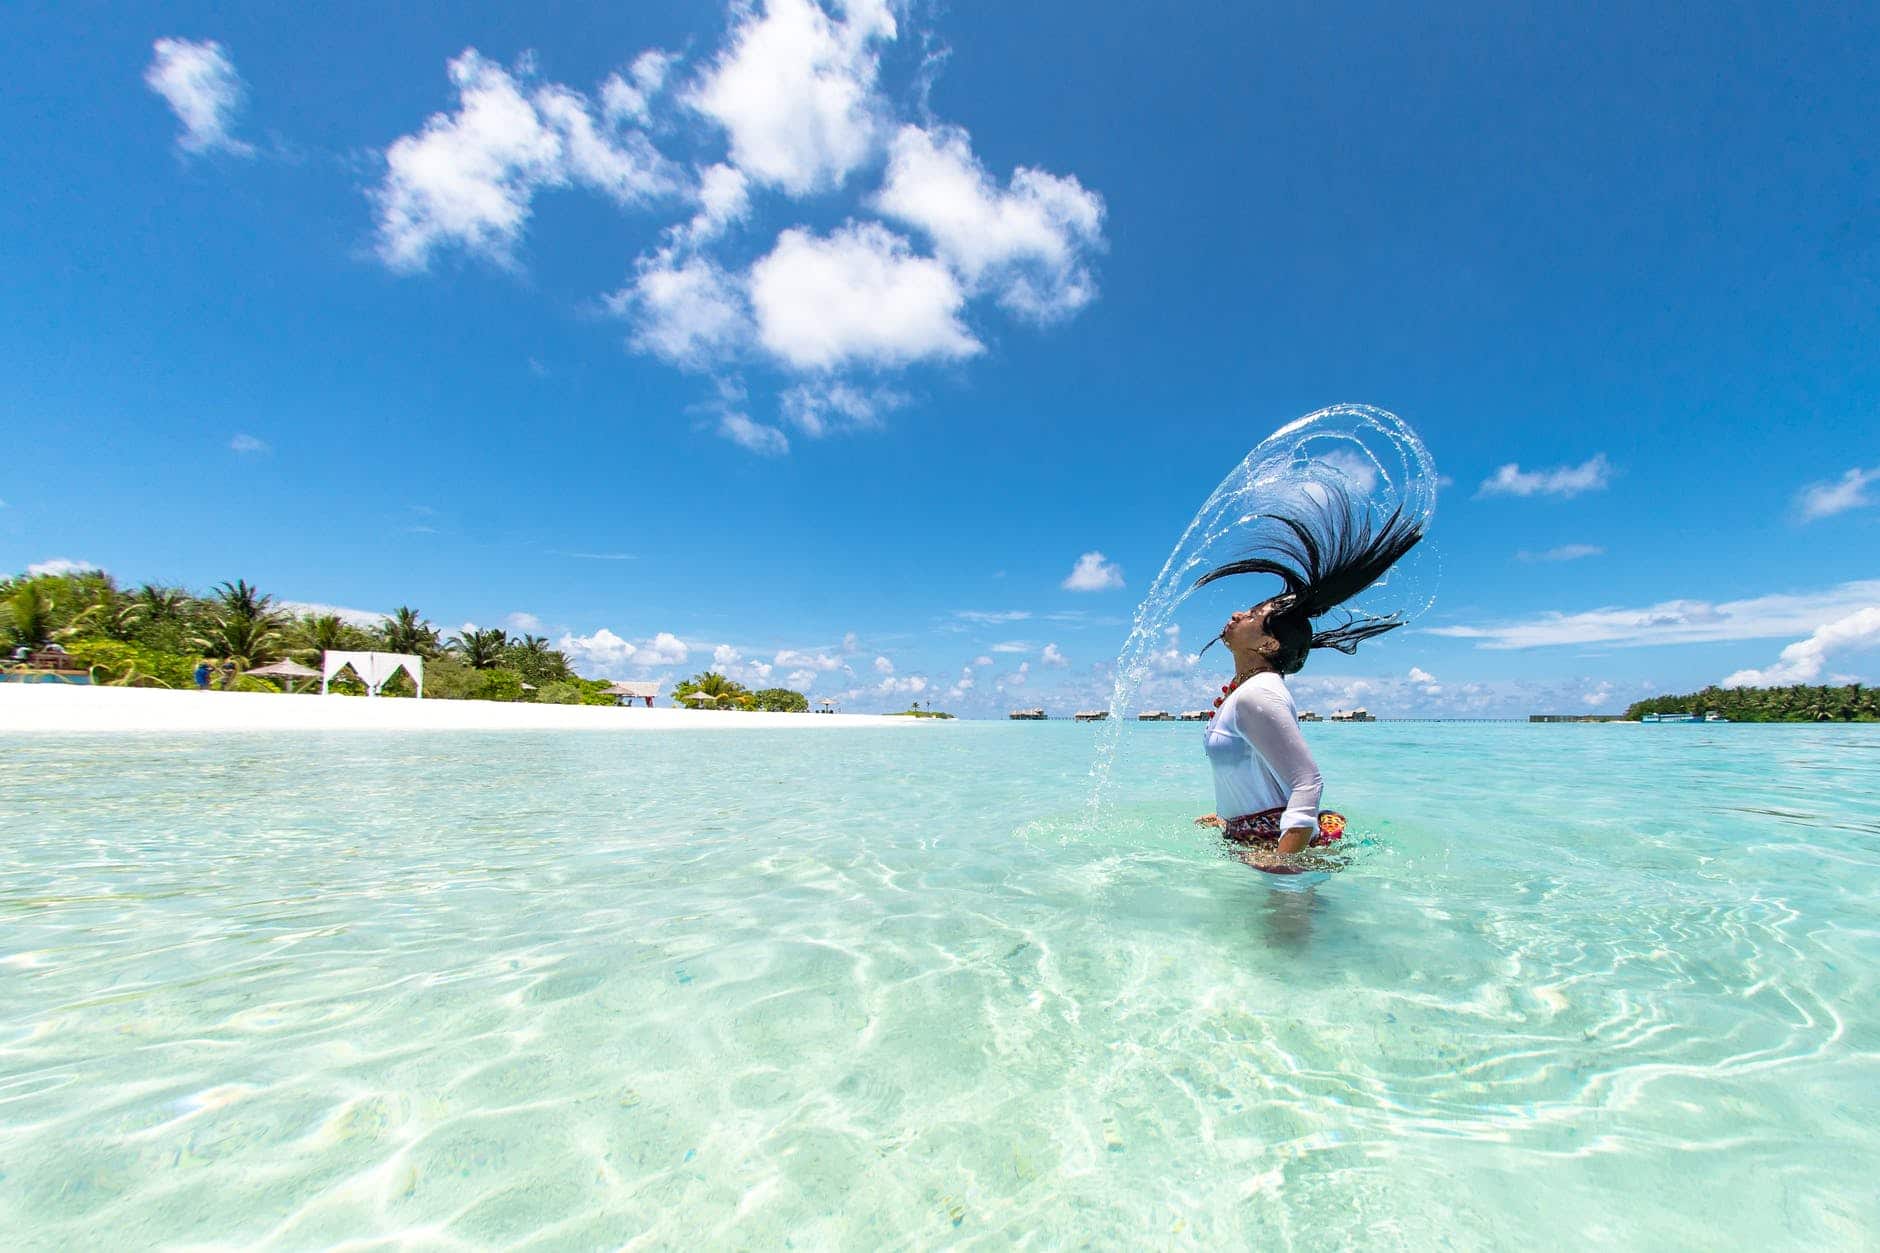 Nachfolgend habe ich die wichtigsten Informationen zu Freizeitaktivitäten aus meinen Malediven Urlaub Erfahrungen zusammengestellt – darin erhältst du einen Überblick, was du auf den Inseln unternehmen kannst. Die Malediven sind ohnehin voller Möglichkeiten, sodass Langeweile im Urlaub sicher nicht aufkommt.